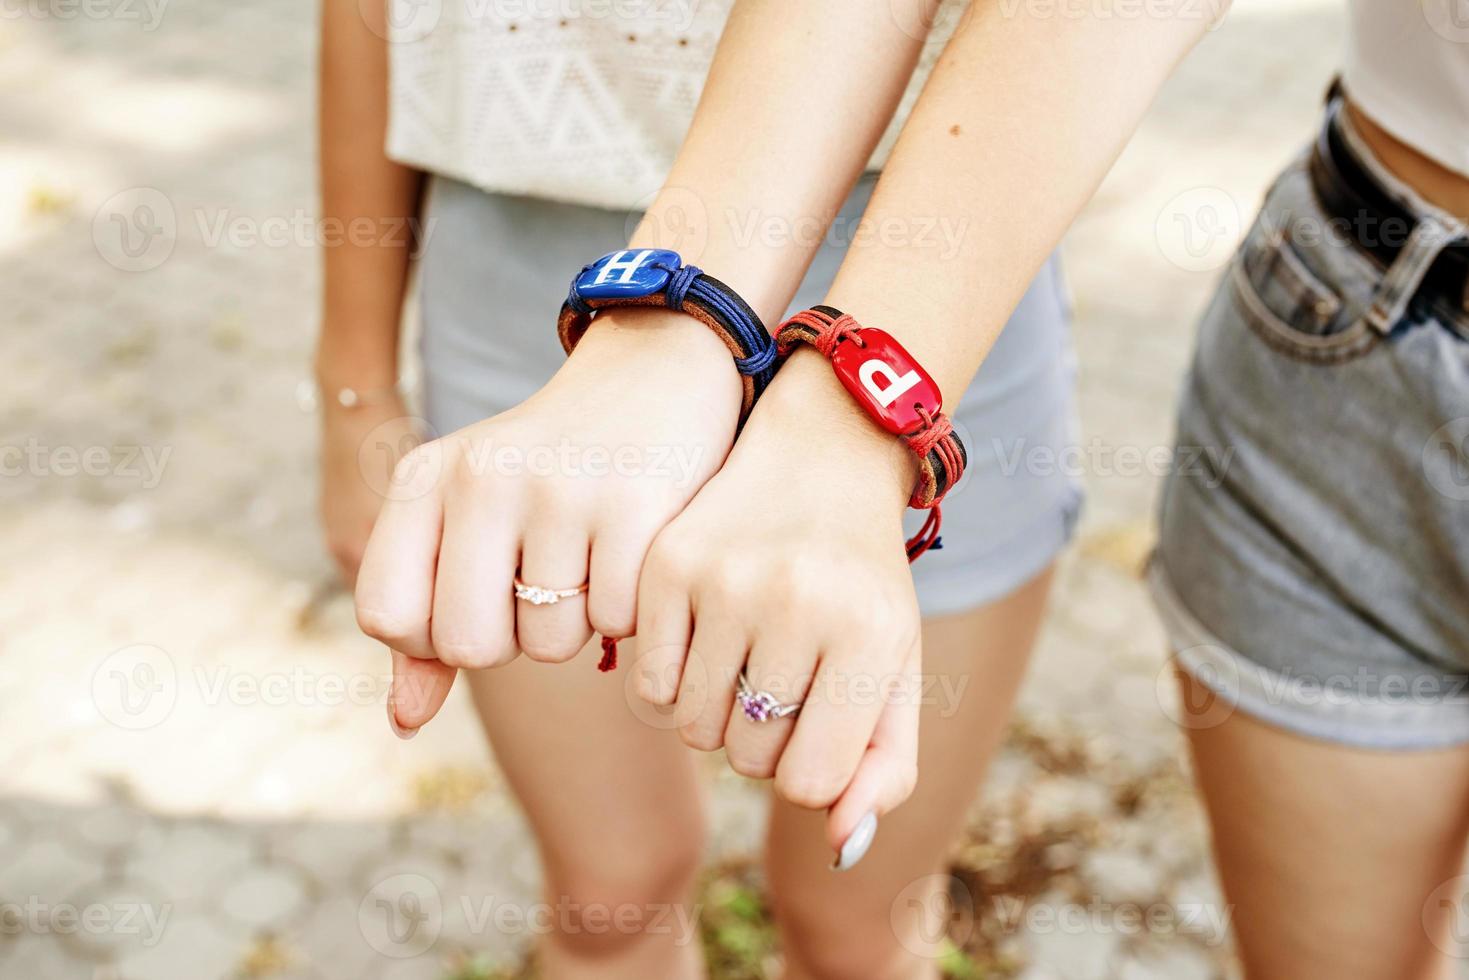 due amiche che mostrano le mani con i braccialetti dell'amicizia foto